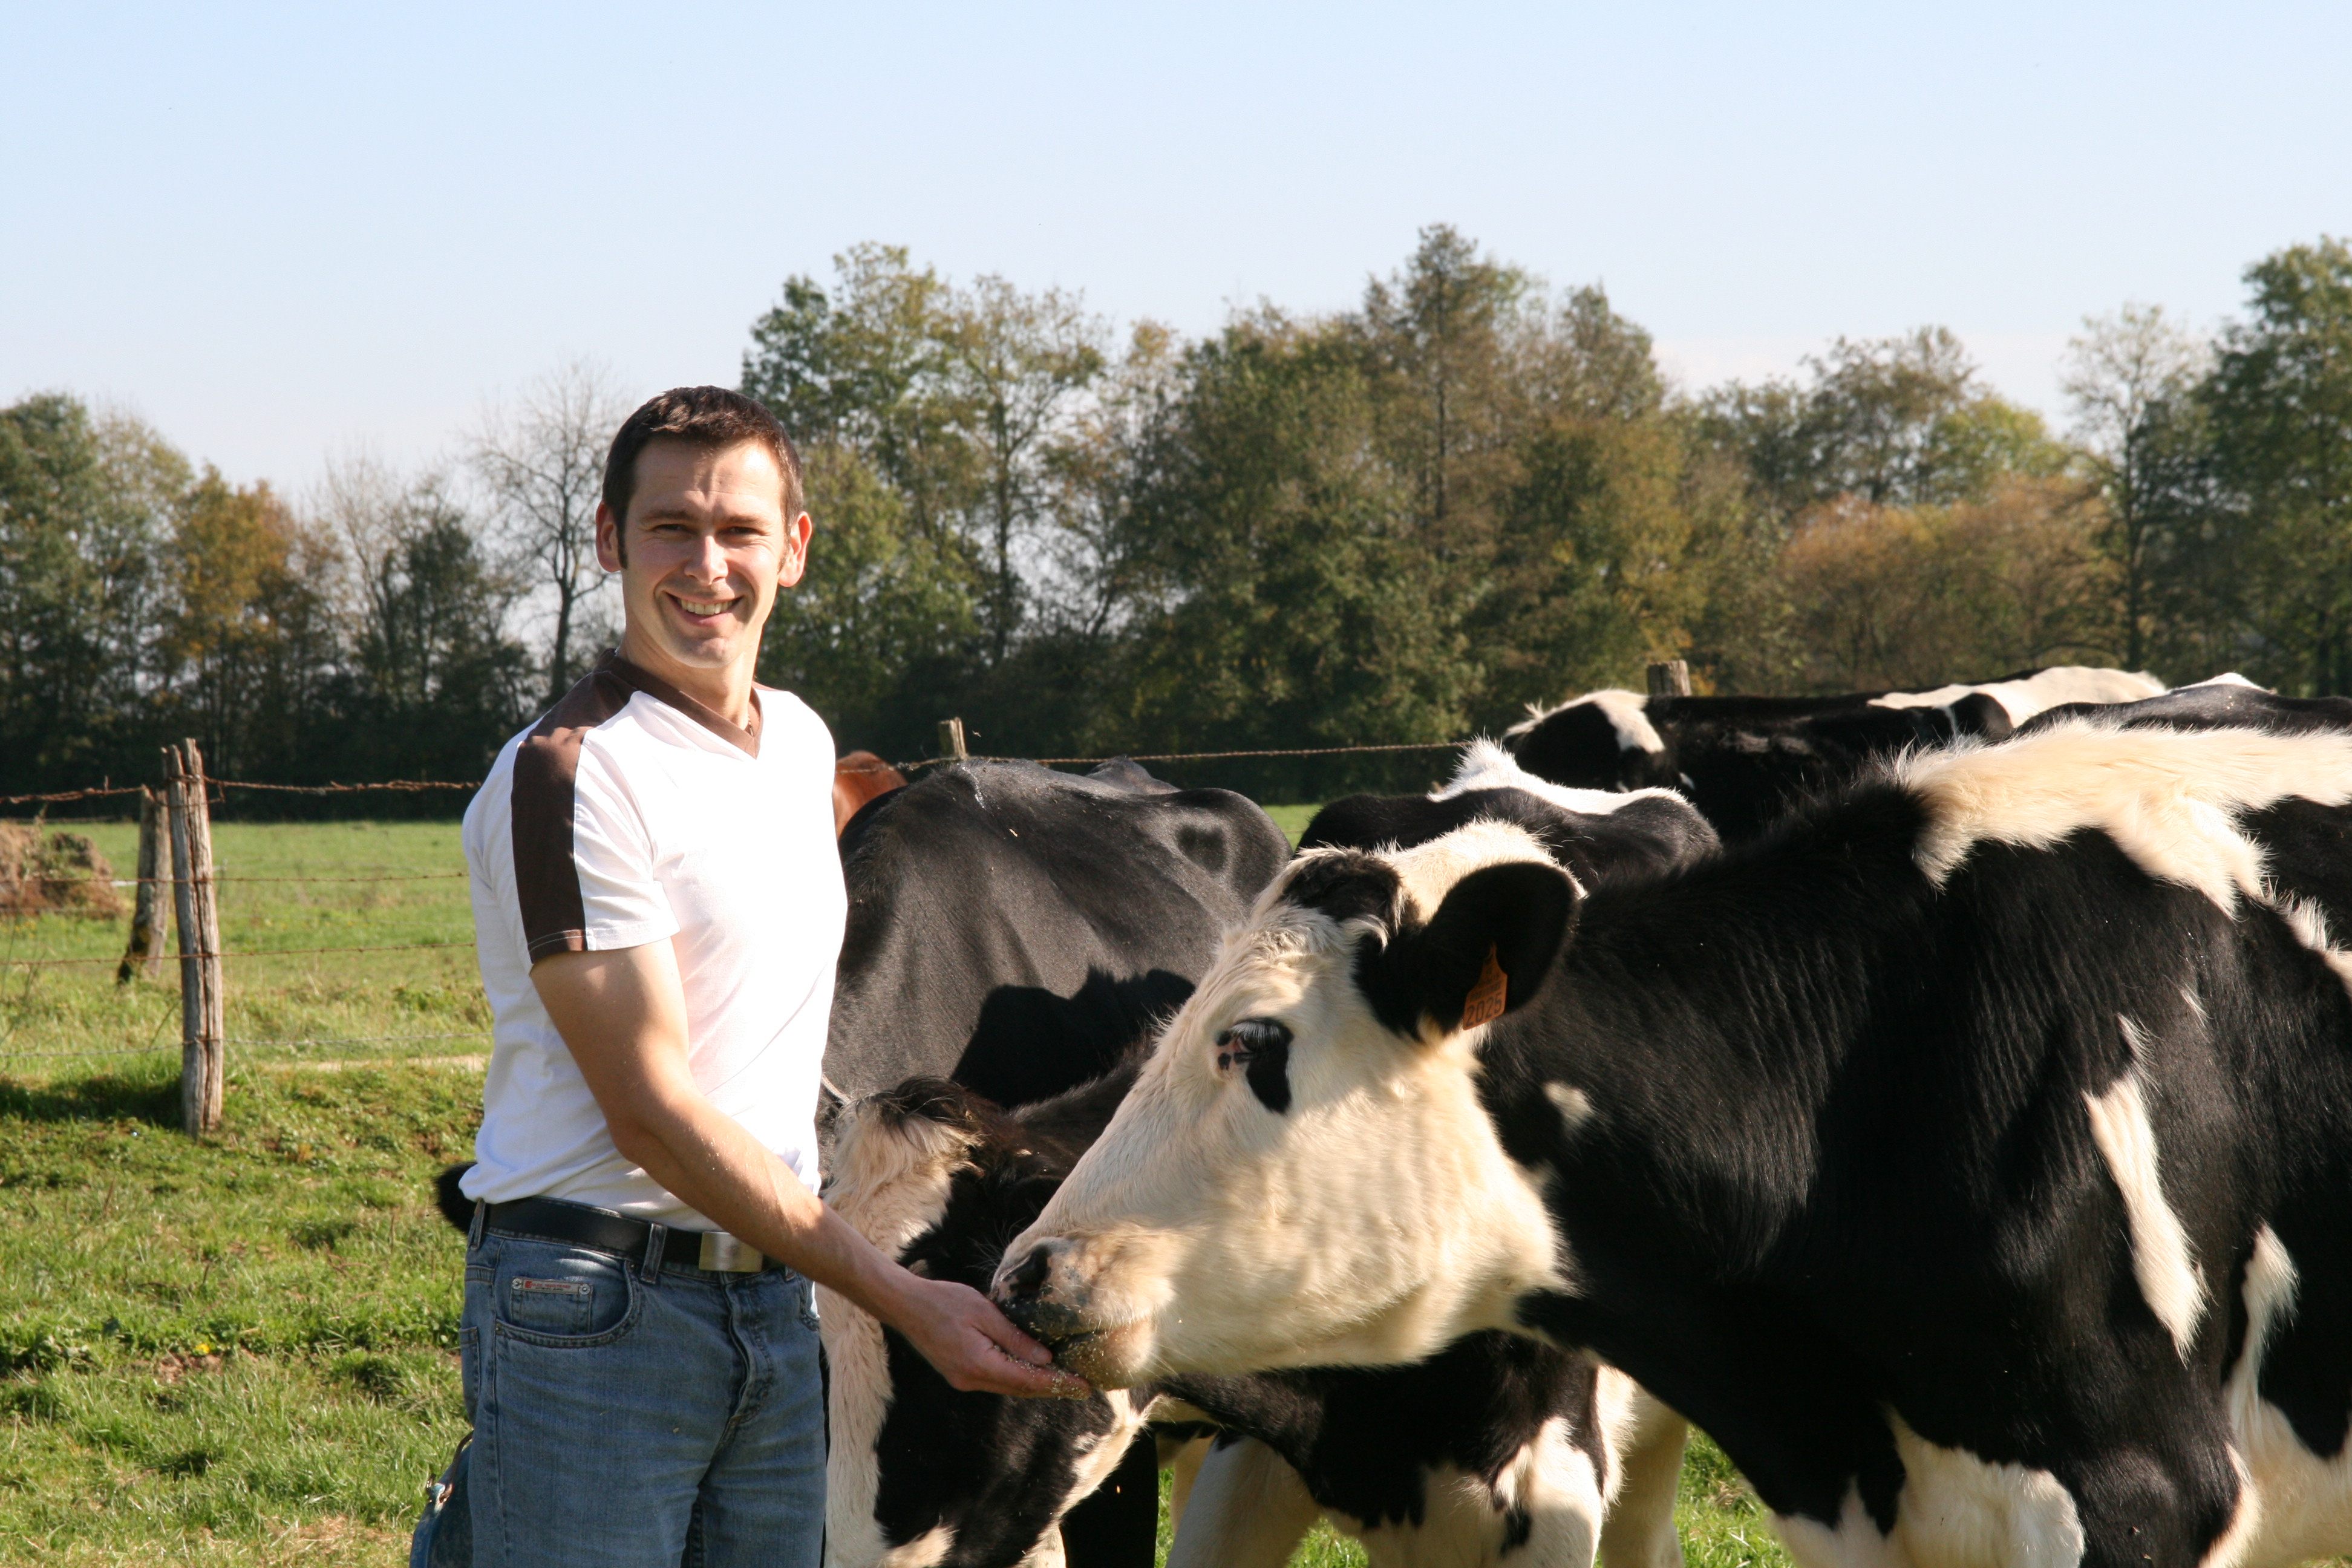 Jeune éleveur souriant proche des vaches Prim'Holstein dans les prés, champs, prairies